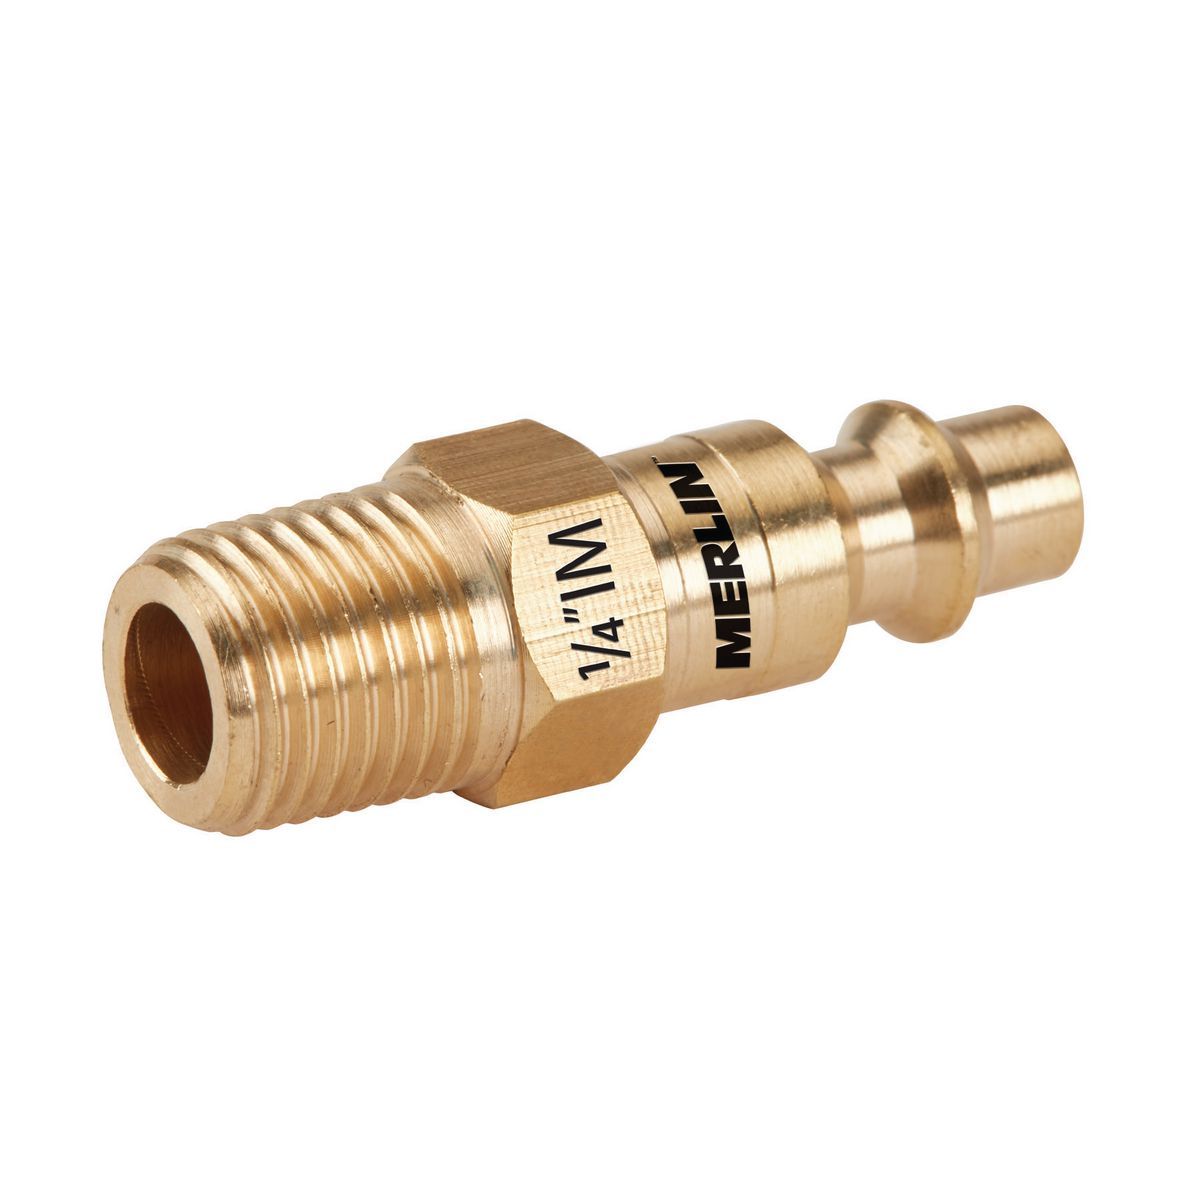 MERLIN 1/4 in. Male Brass Industrial Plug